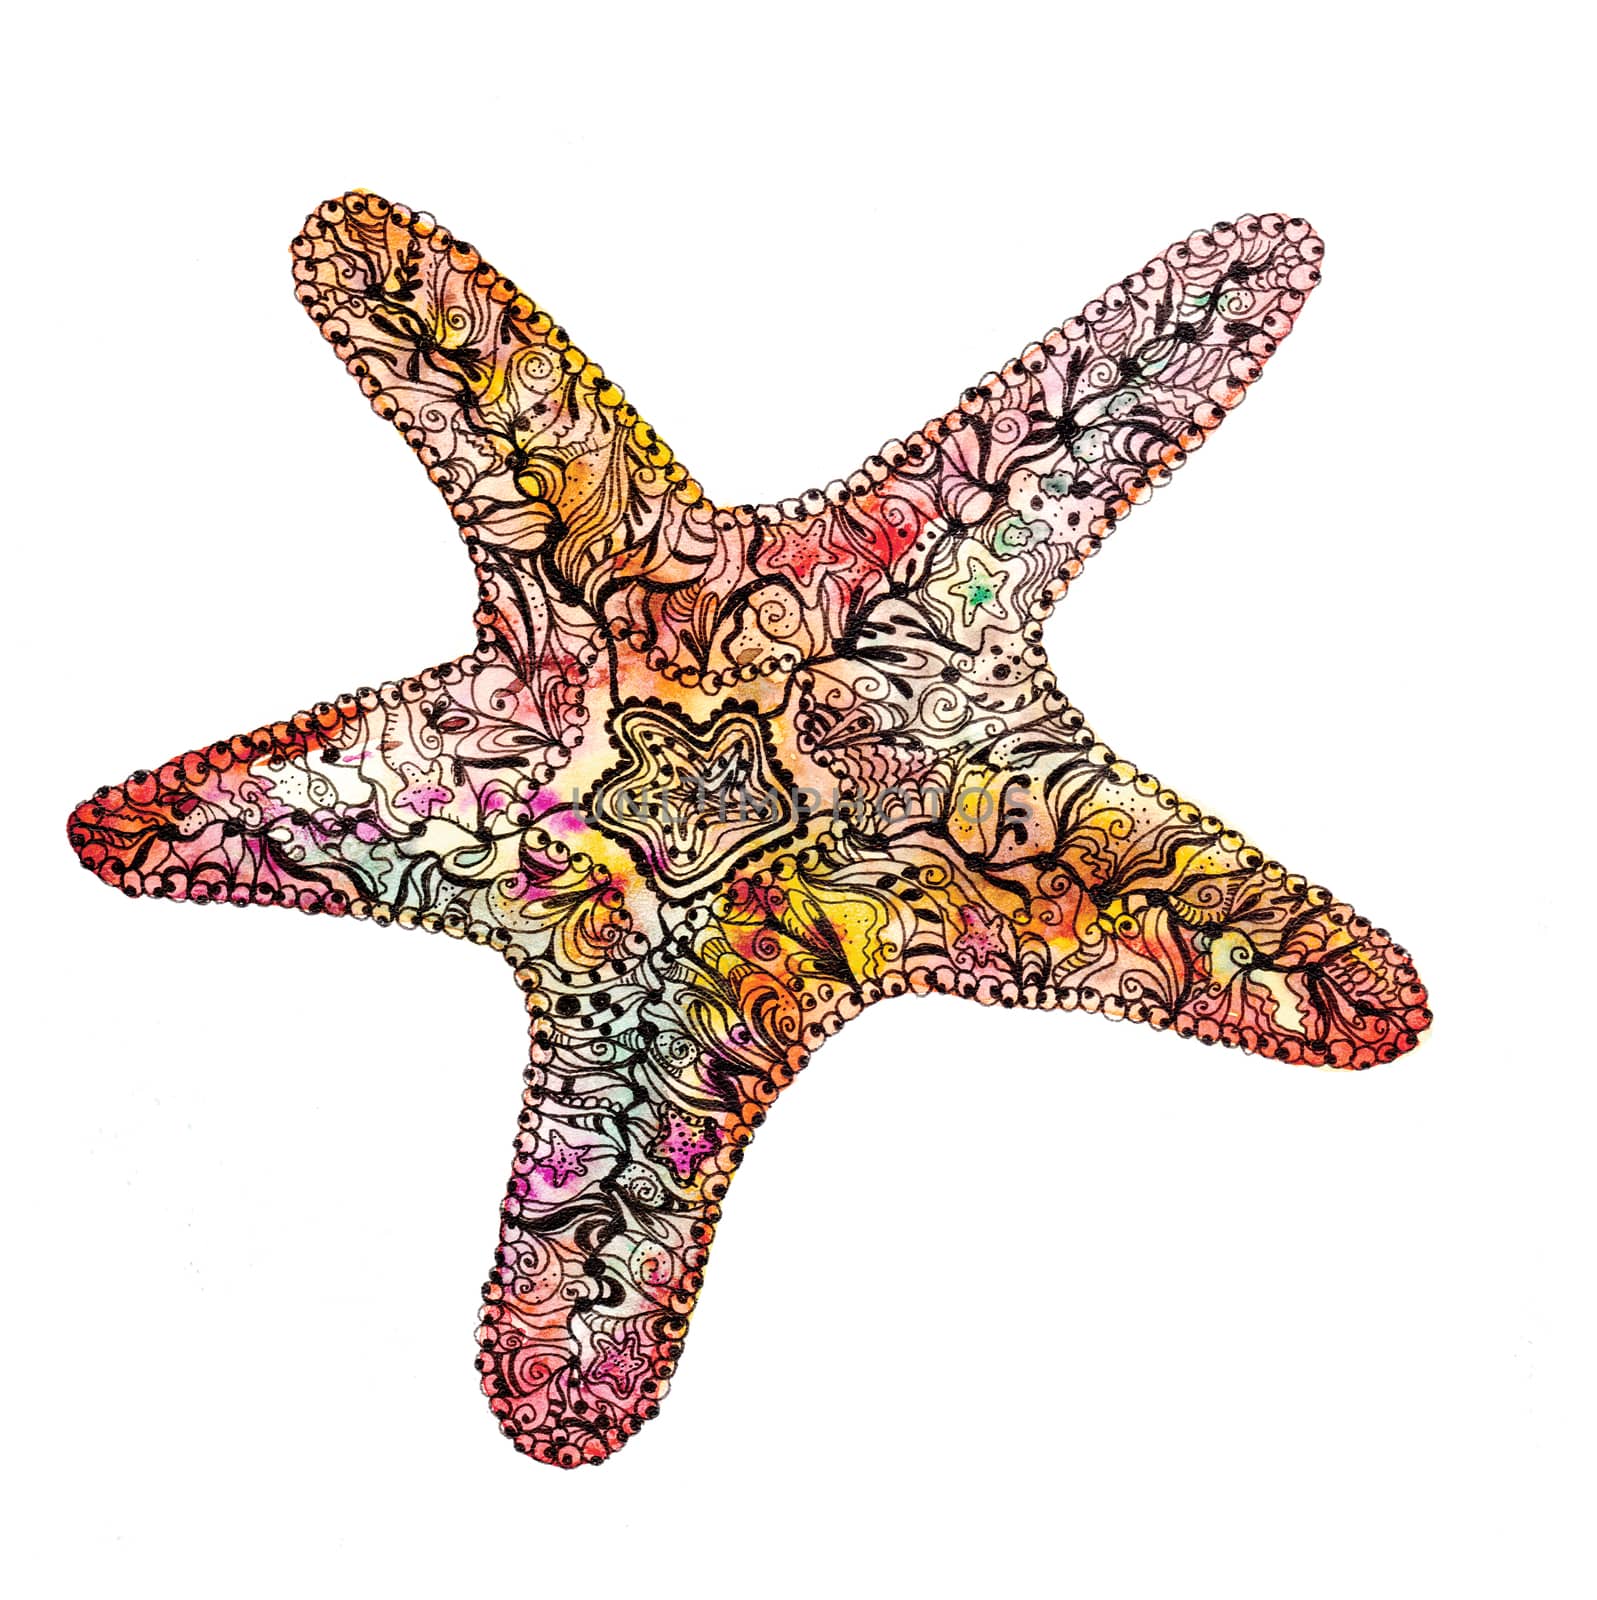 Creative watercolor starfish by kisika